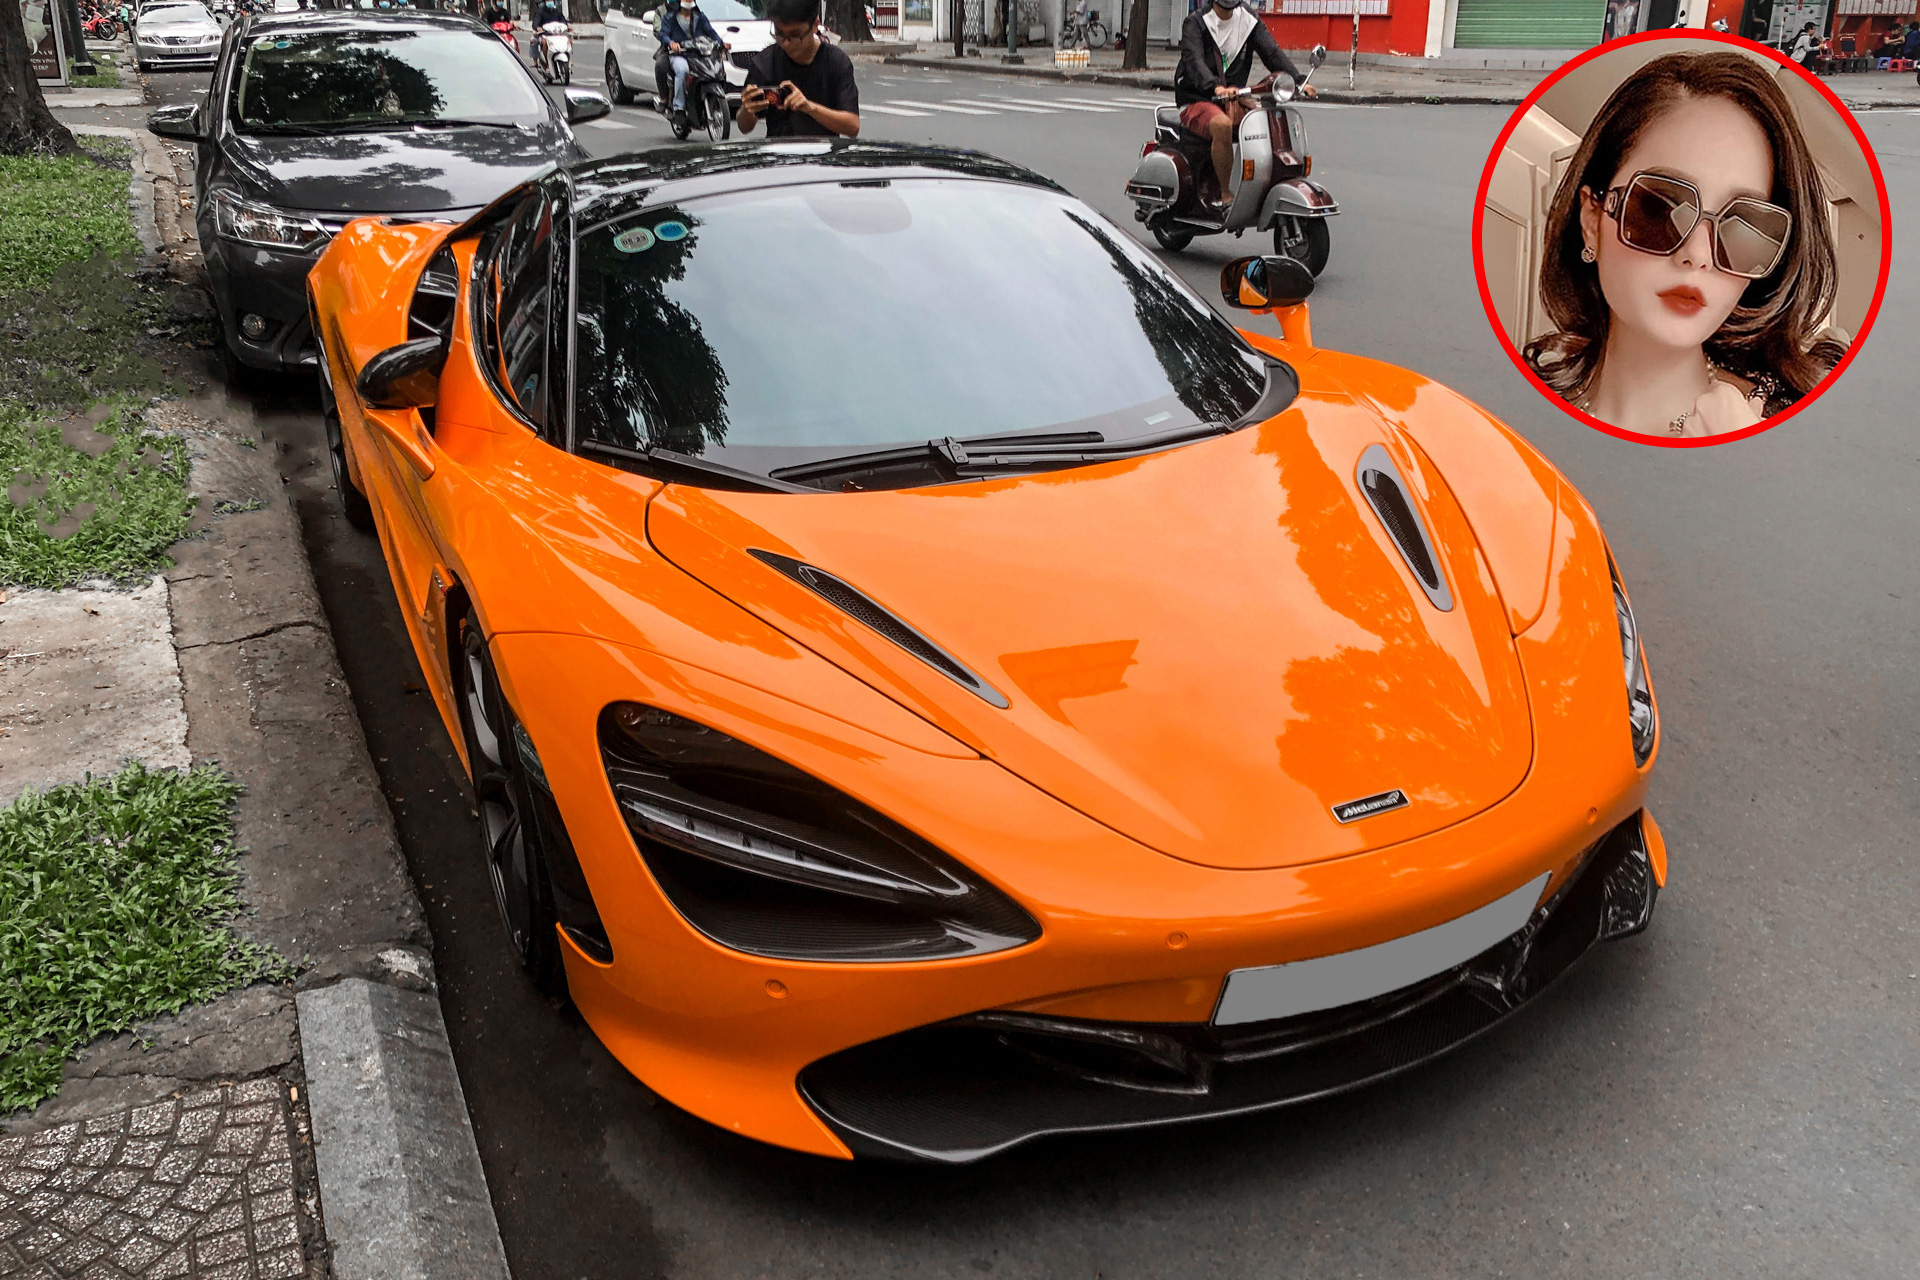 Siêu xe McLaren 765LT sắp được ngân hàng đưa ra đấu giá, khởi điểm 27,5 tỉ  đồng - Tuổi Trẻ Online